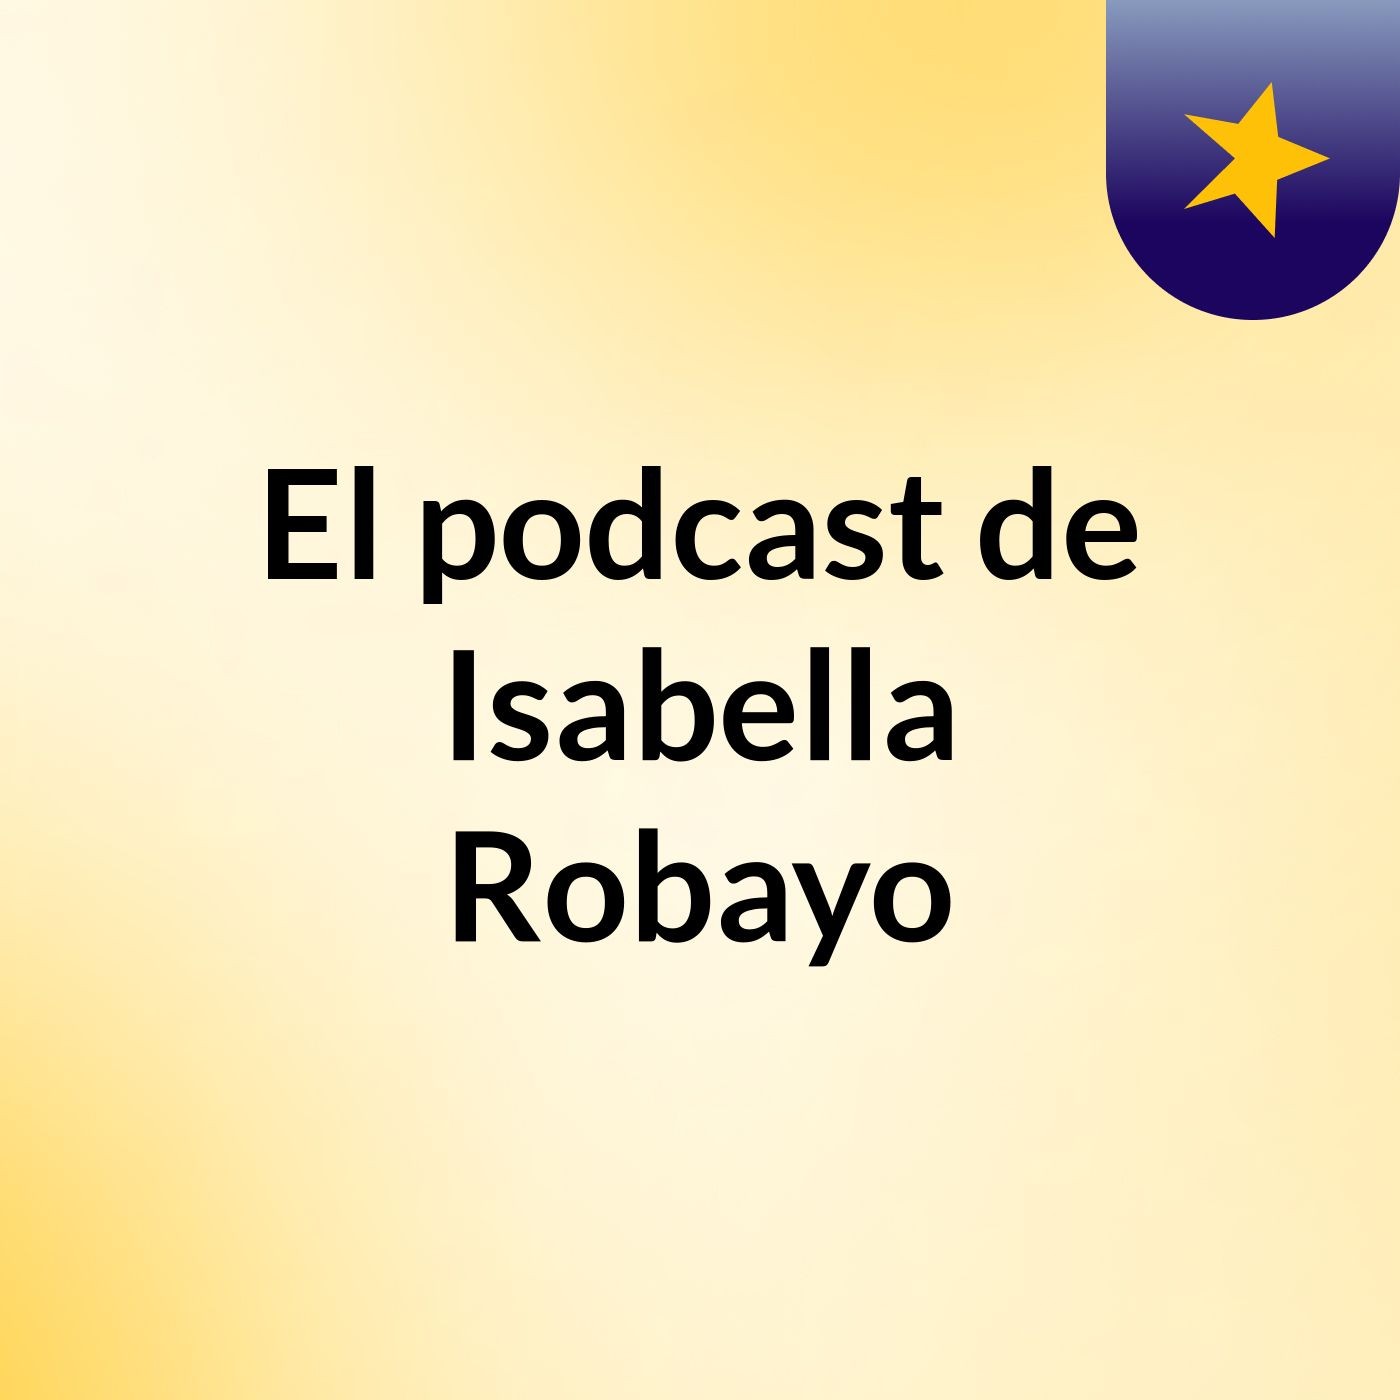 El podcast de Isabella Robayo